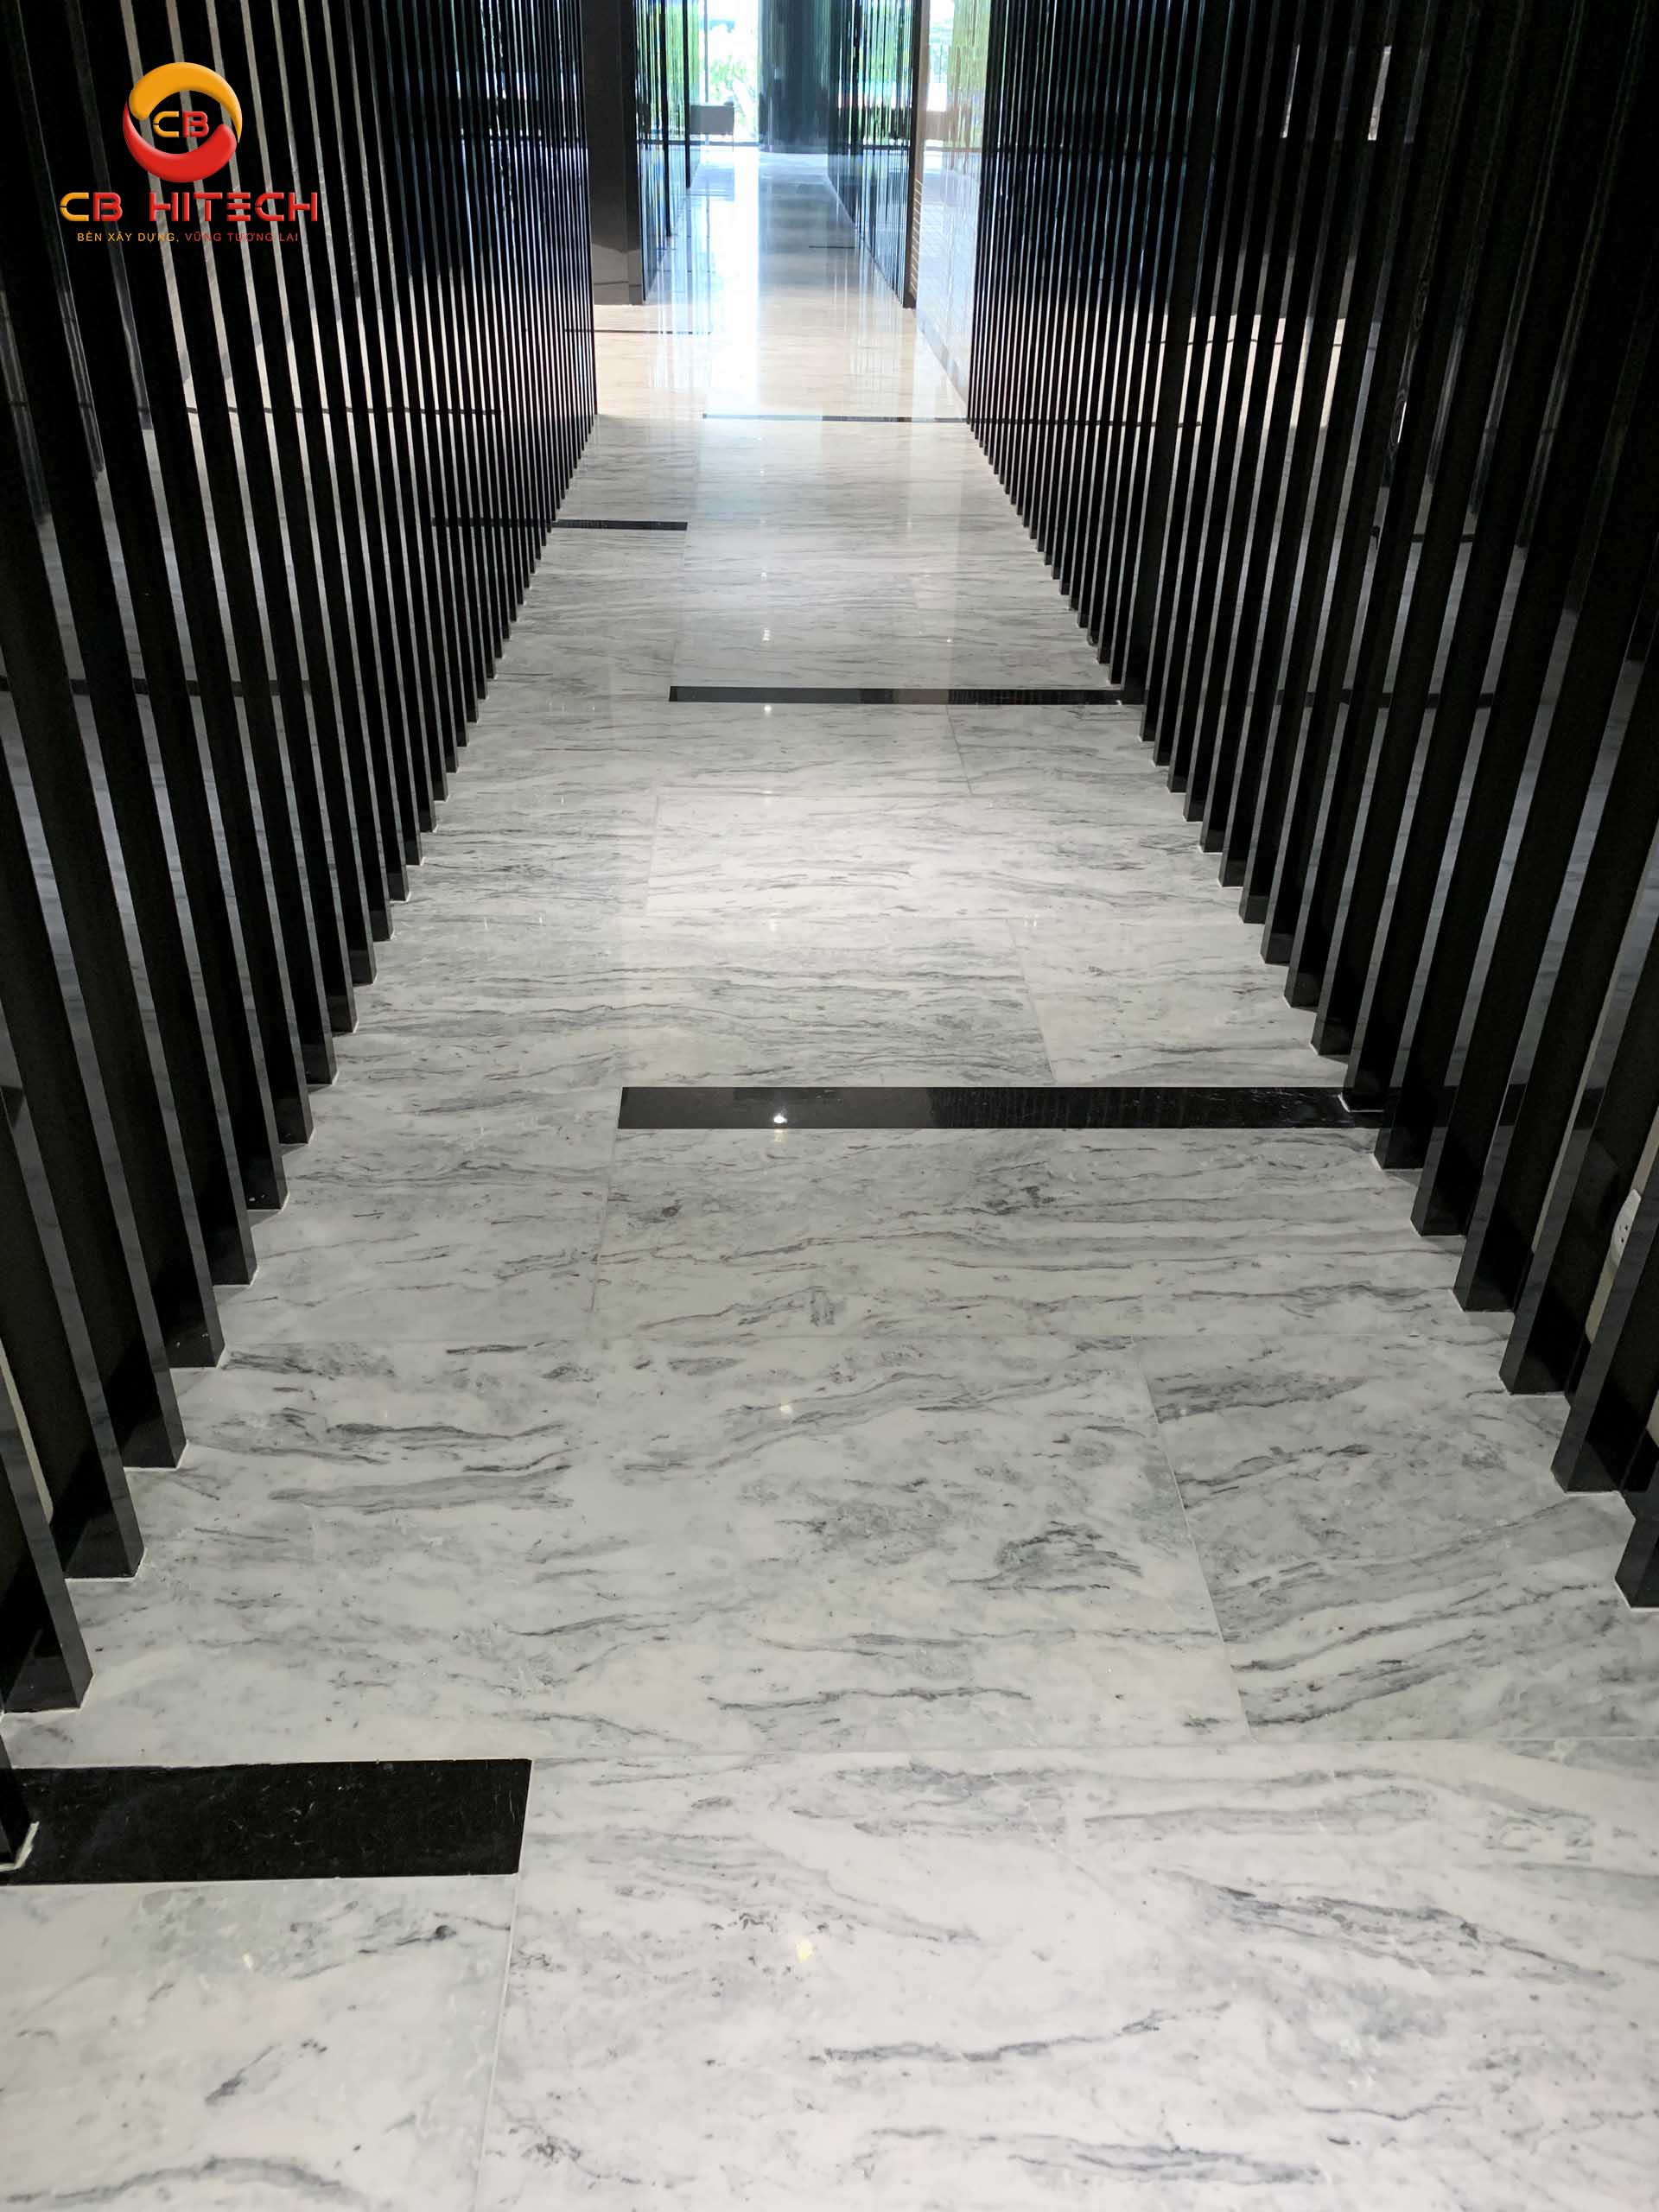 Sàn lát đá marble trắng Ý, , dự án PD-17 Dịch Vọng Hầu. Nguồn: CB HITECH.